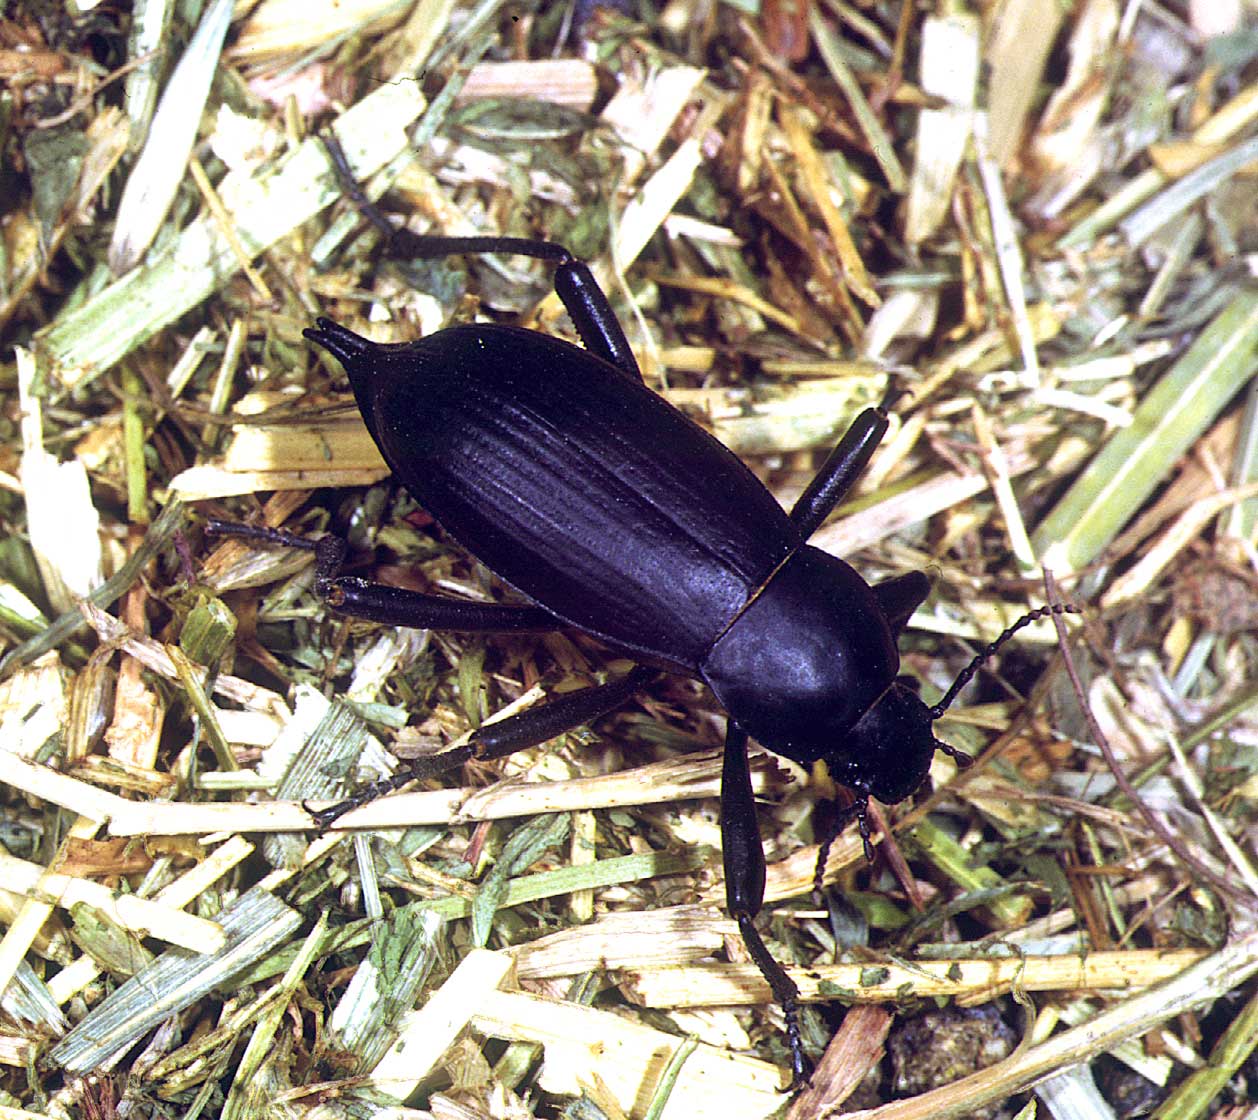 Egyptian Beetle